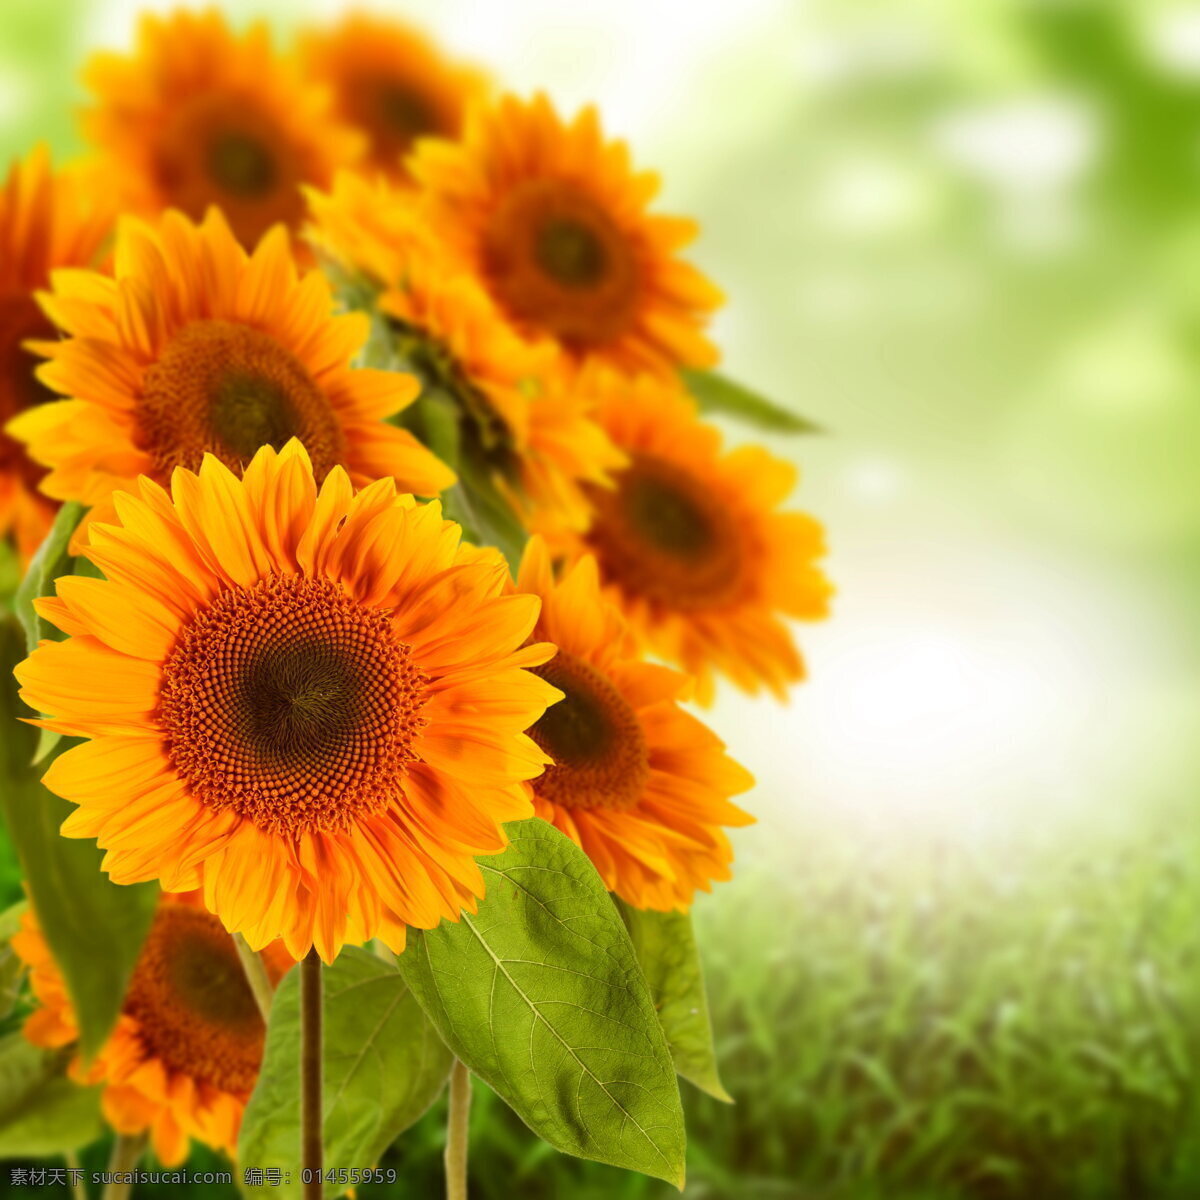 向日葵唯美 向日葵 唯美花朵 花卉 花朵 花盘 花瓣 花蕊 绿叶 黄色花朵 黄花 向阳花 花草 植物 生物世界 向日葵花